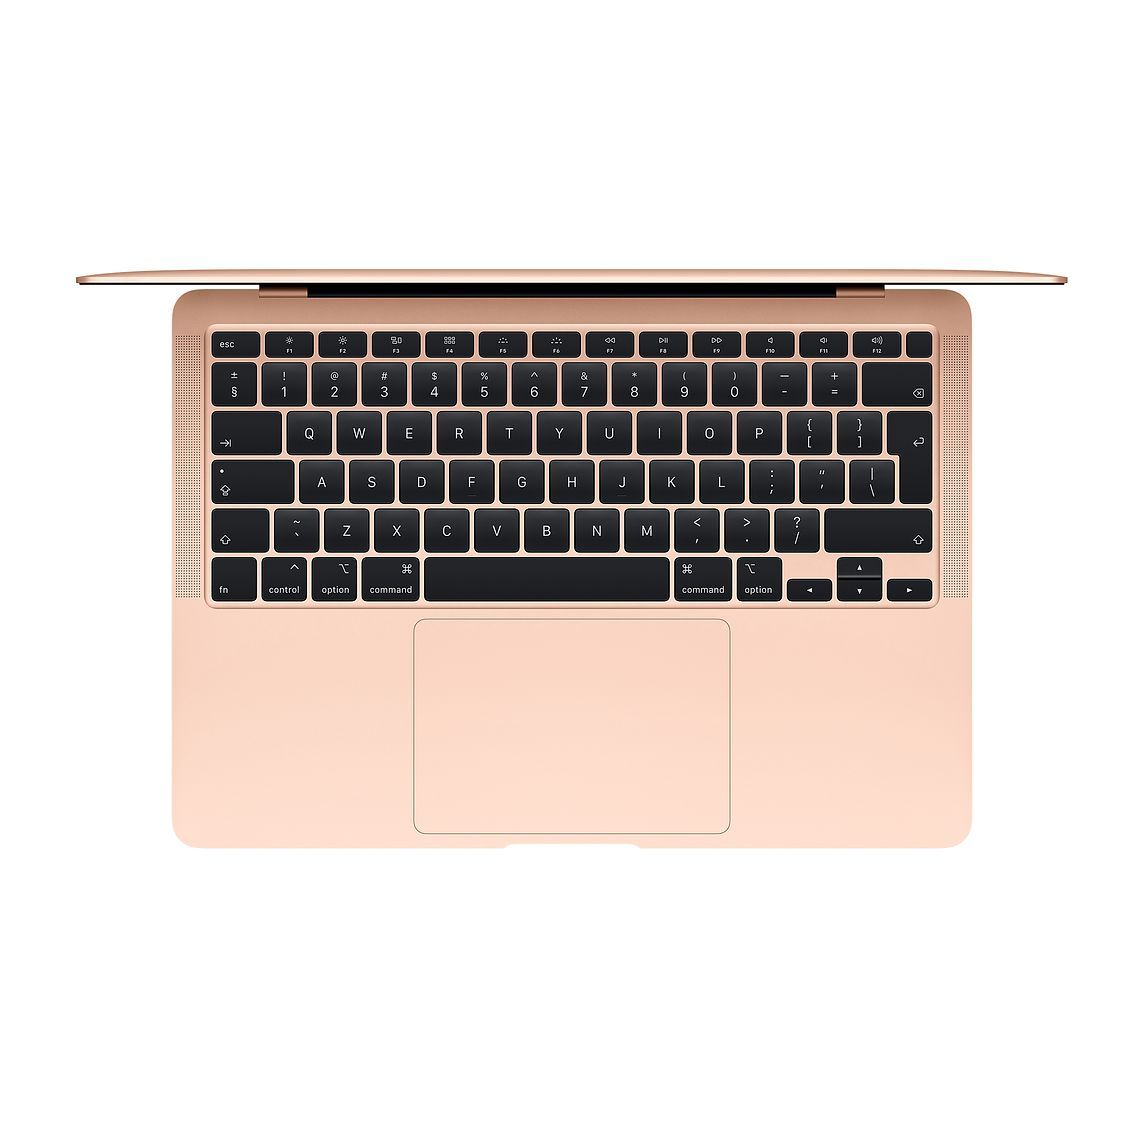 Macbook Air 13 inch 2018 used 